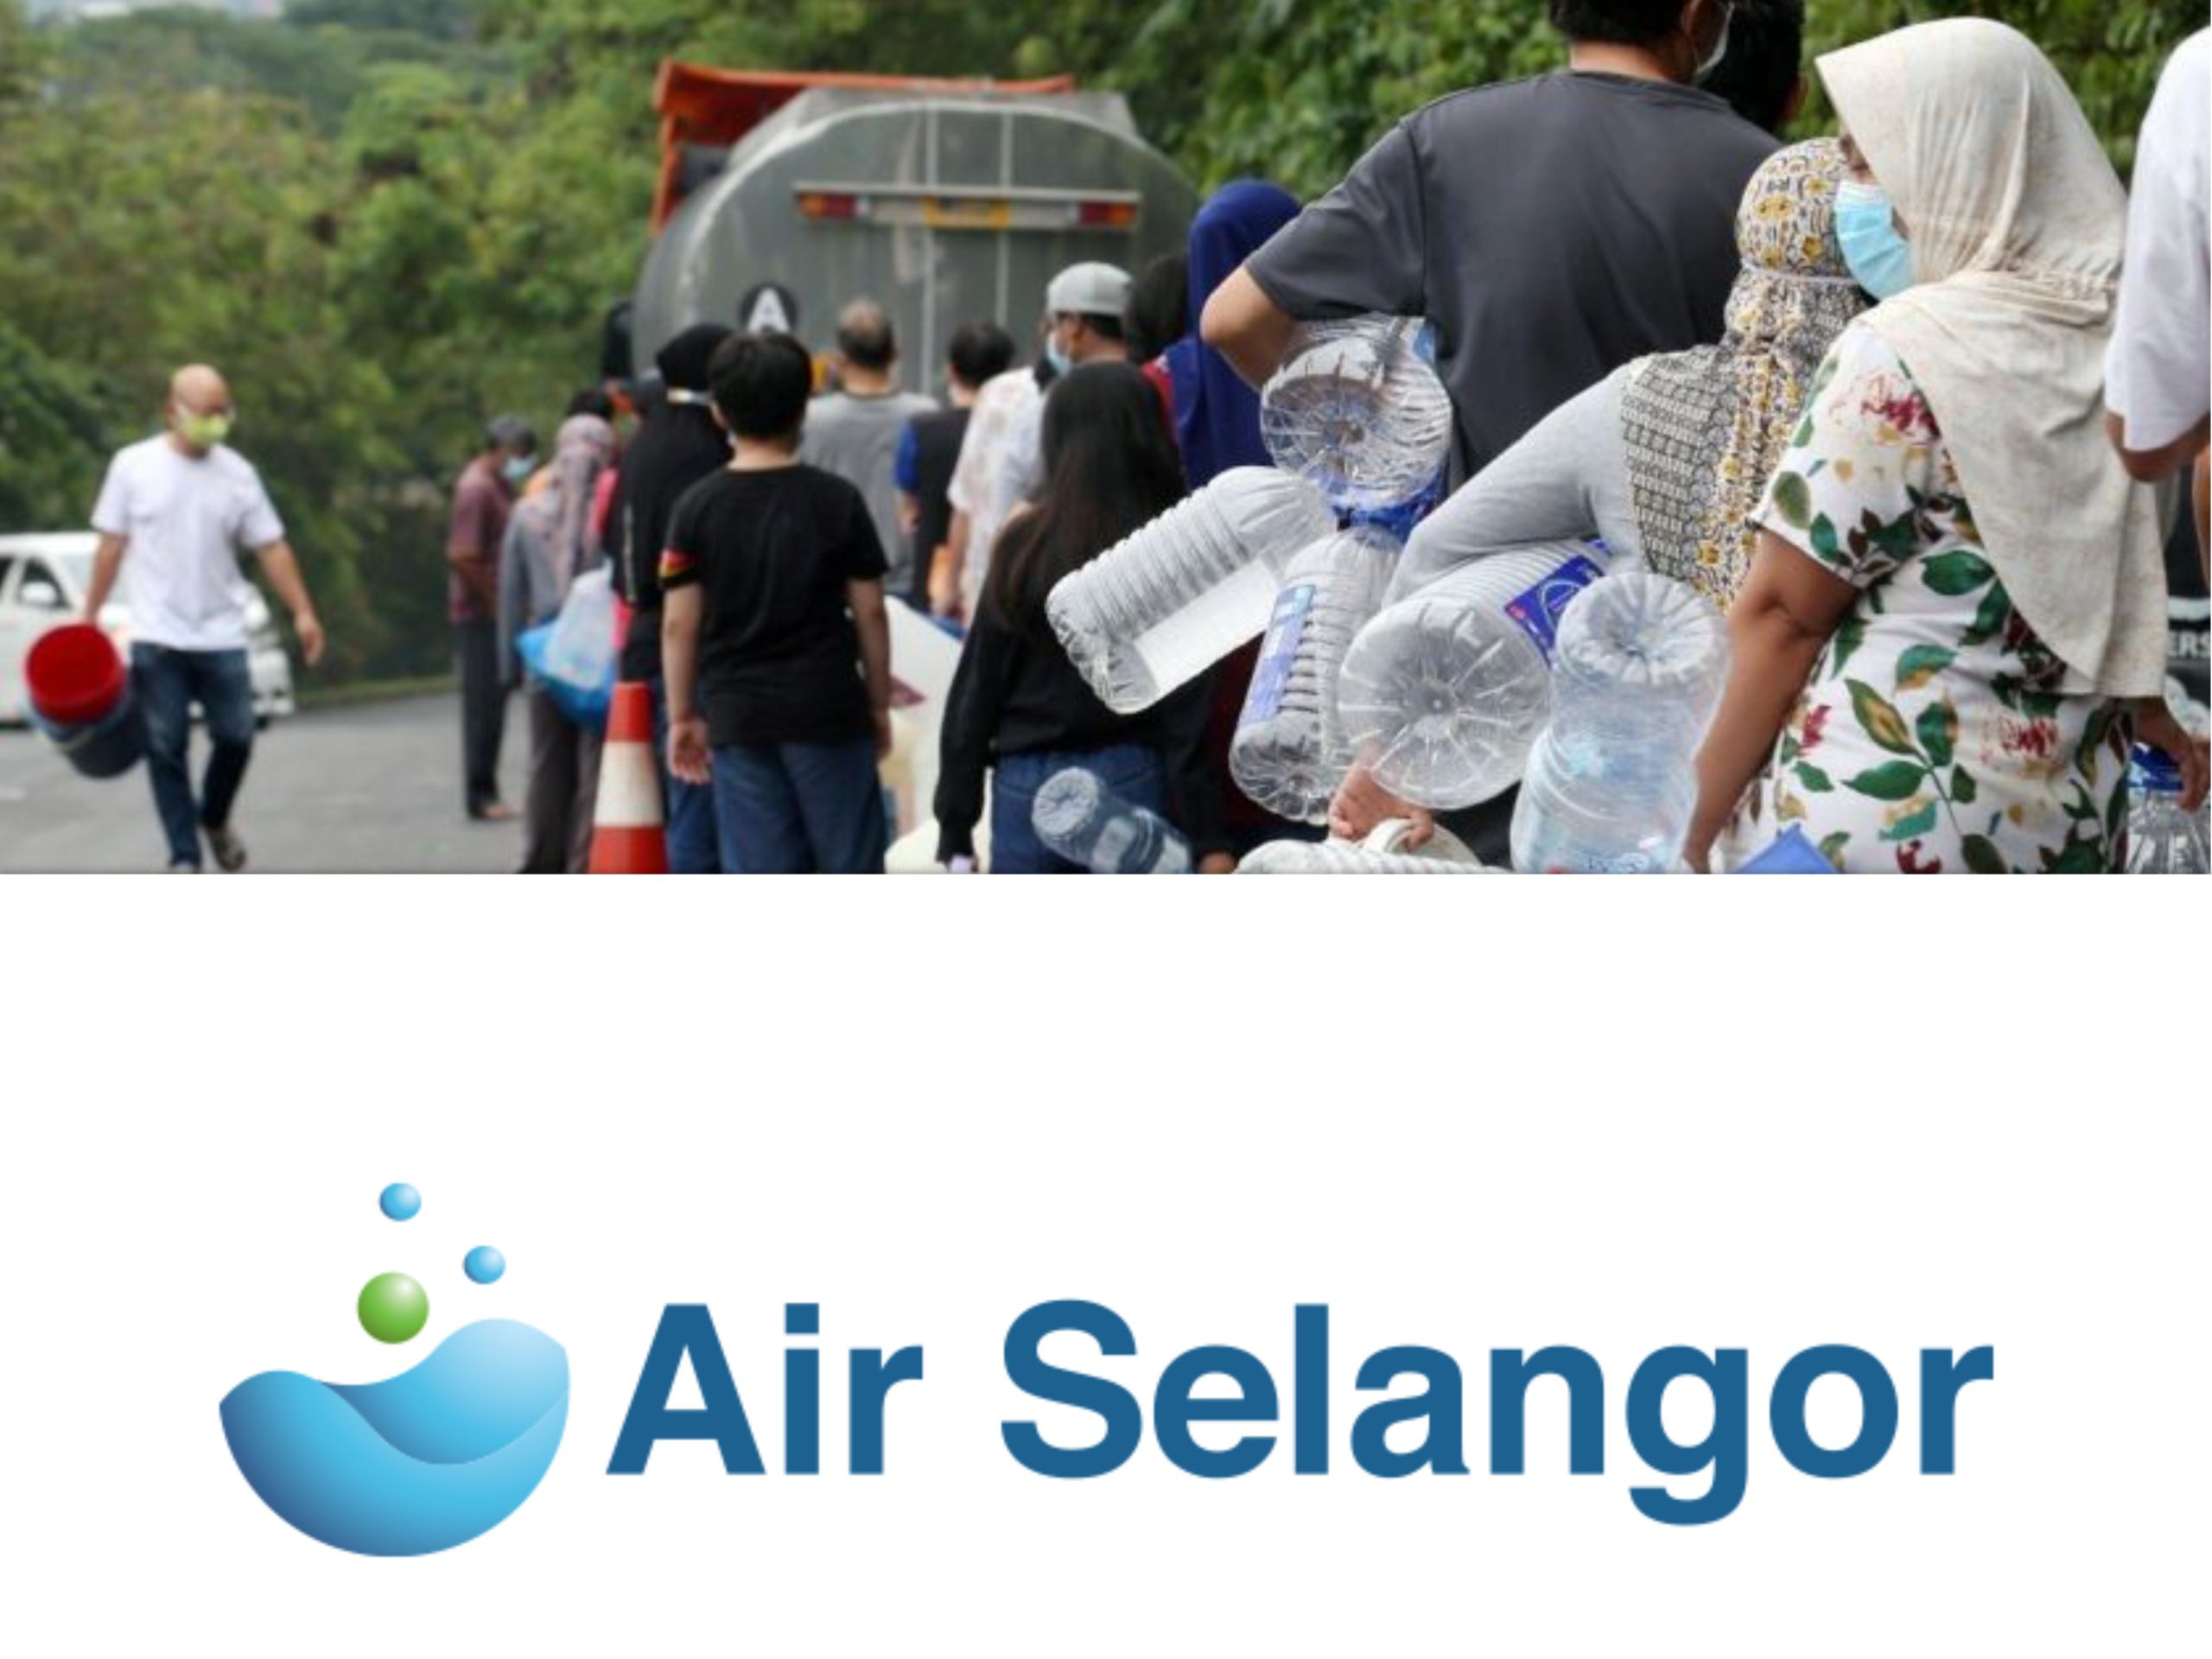 Air Selangor Buat Pemotongan Air Di 36 Kawasan Termasuk Shah Alam, USJ, Klang & Petaling Jaya